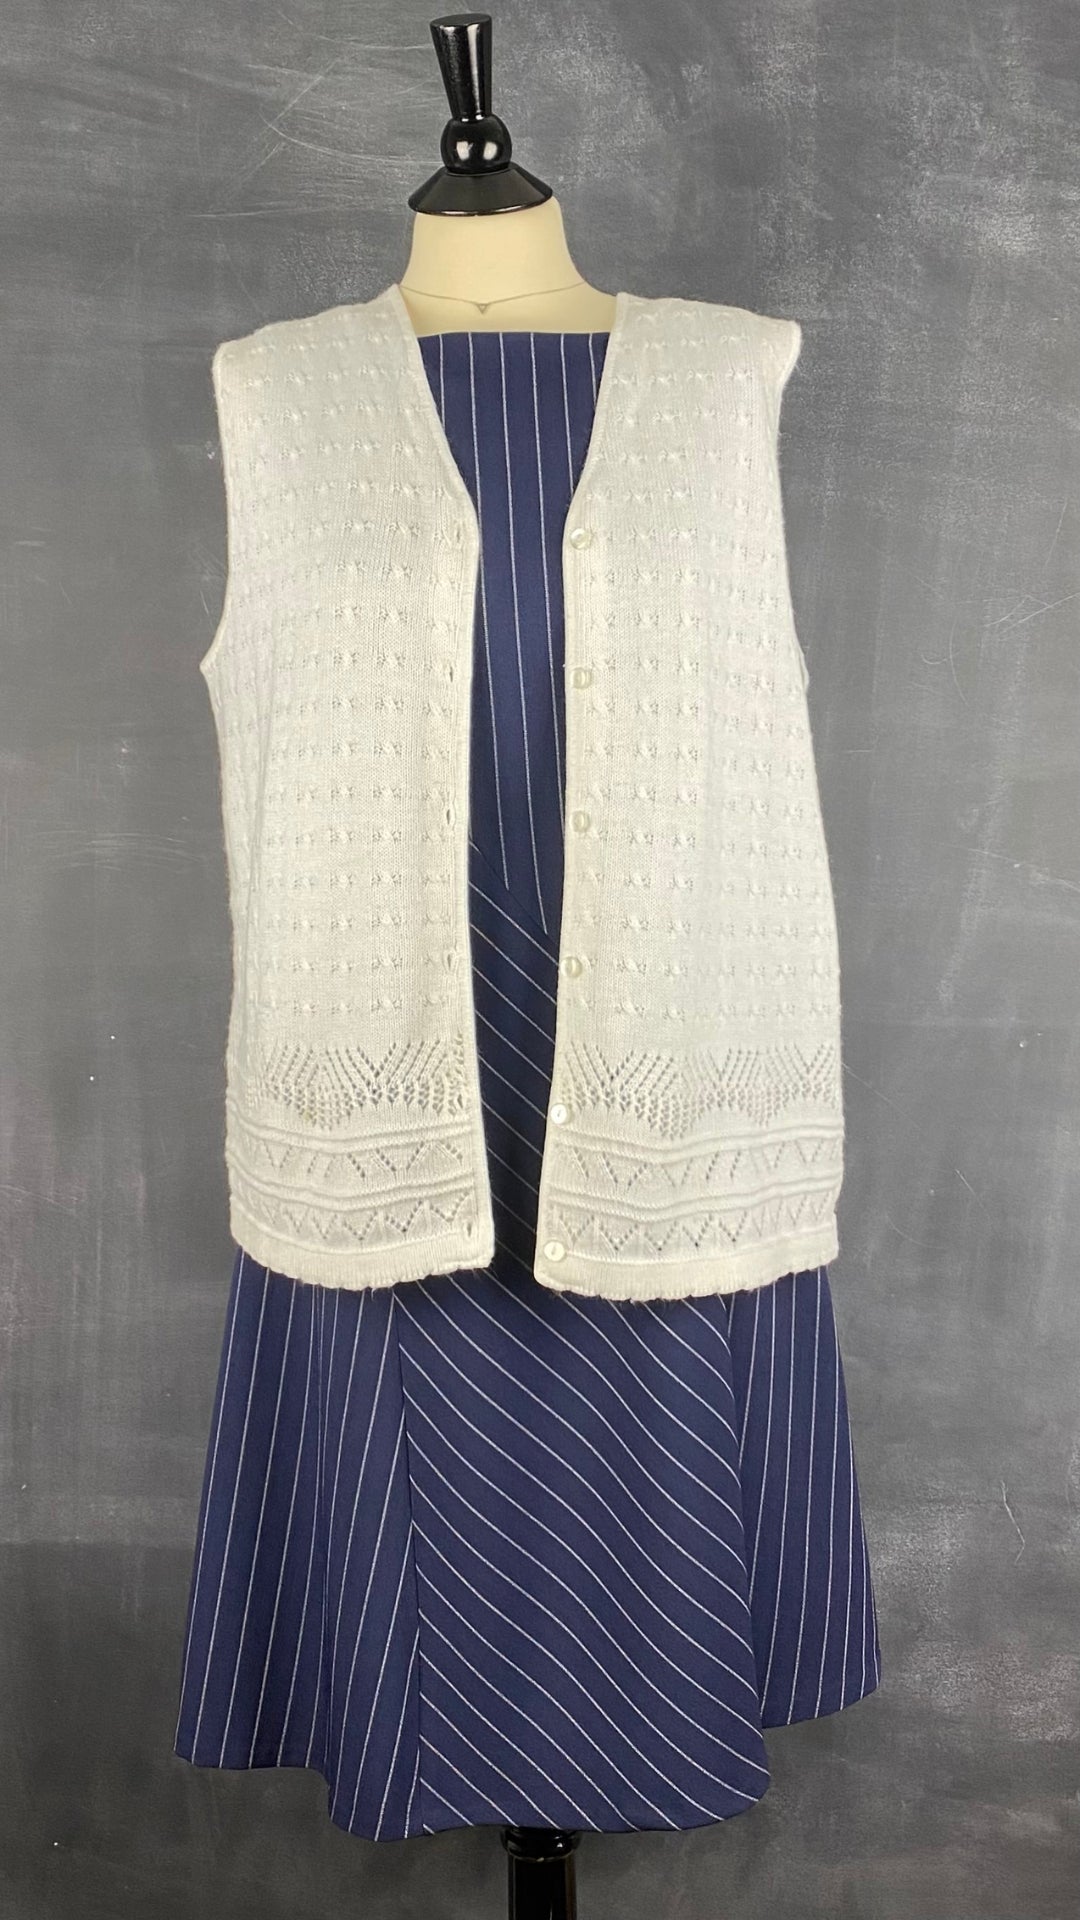 Gilet en tricot féminin crème vintage D'Aillairds, taille m/l. Vue de l'agencement avec la robe marine à rayures blanches.